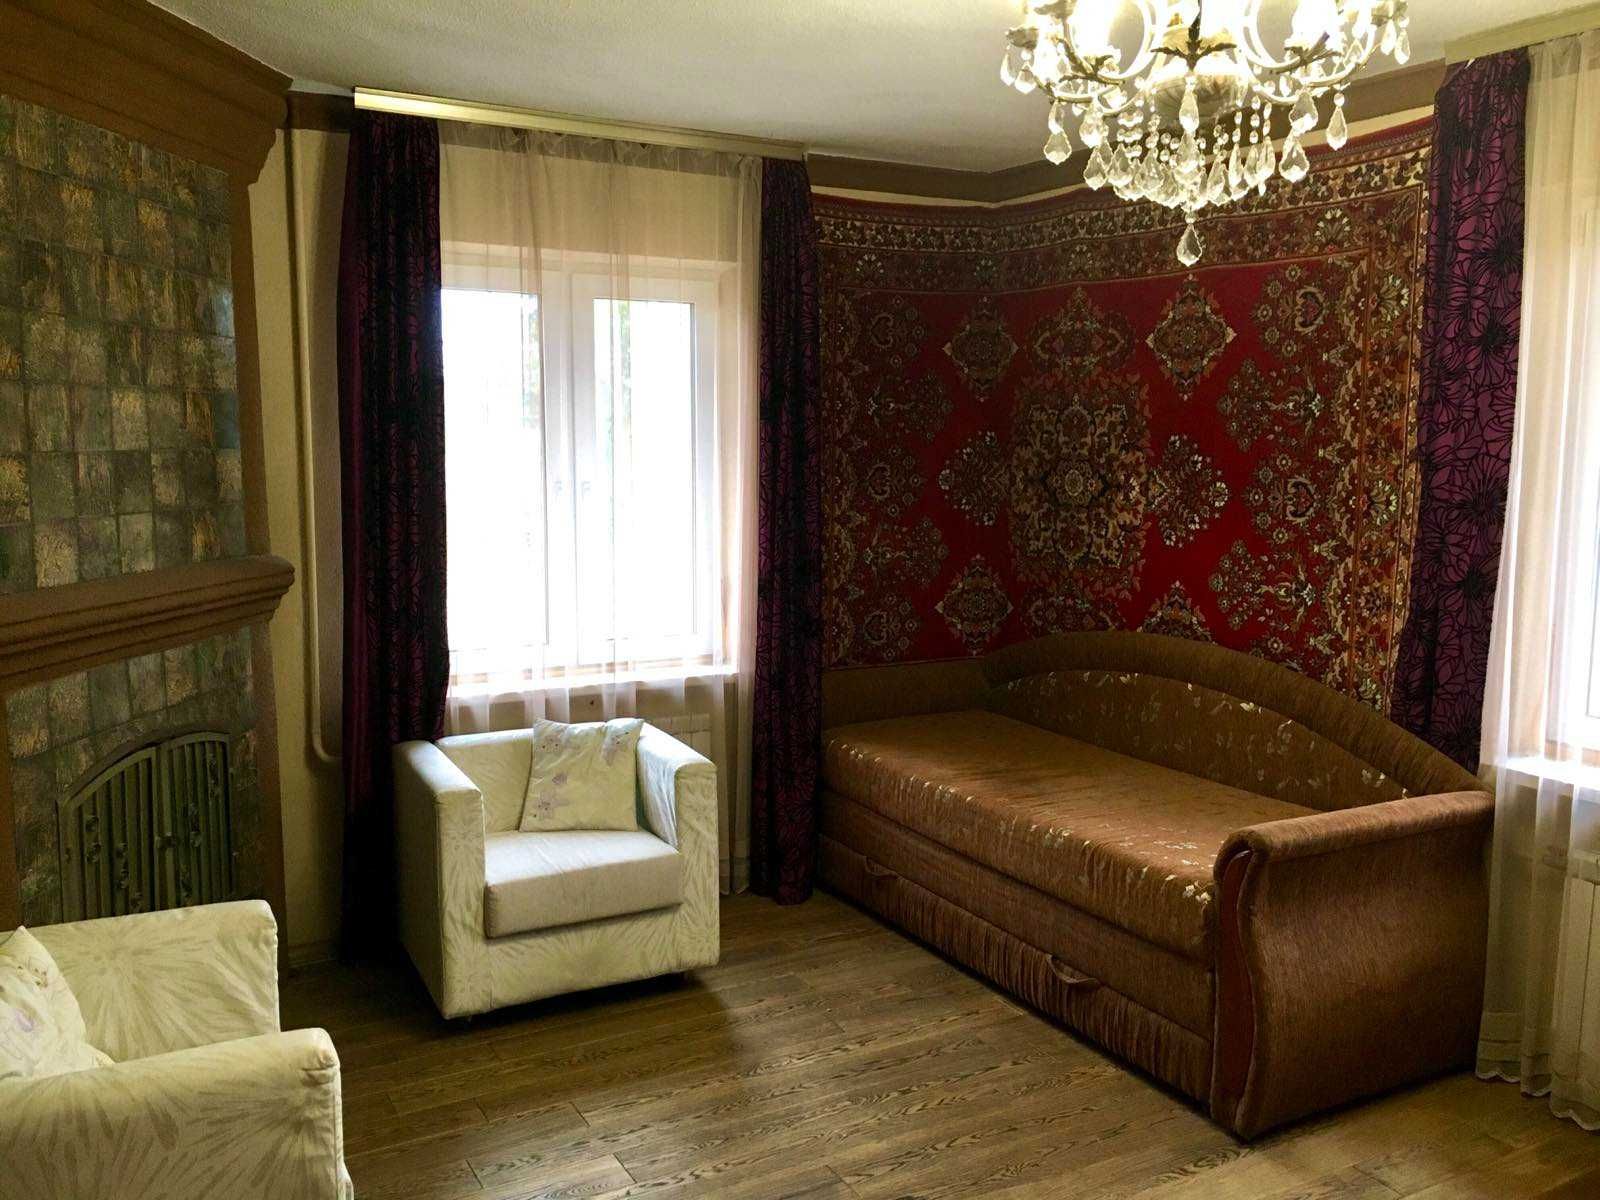 Продам чудовий будинок за 45 км від Києва по Одеській трасі.